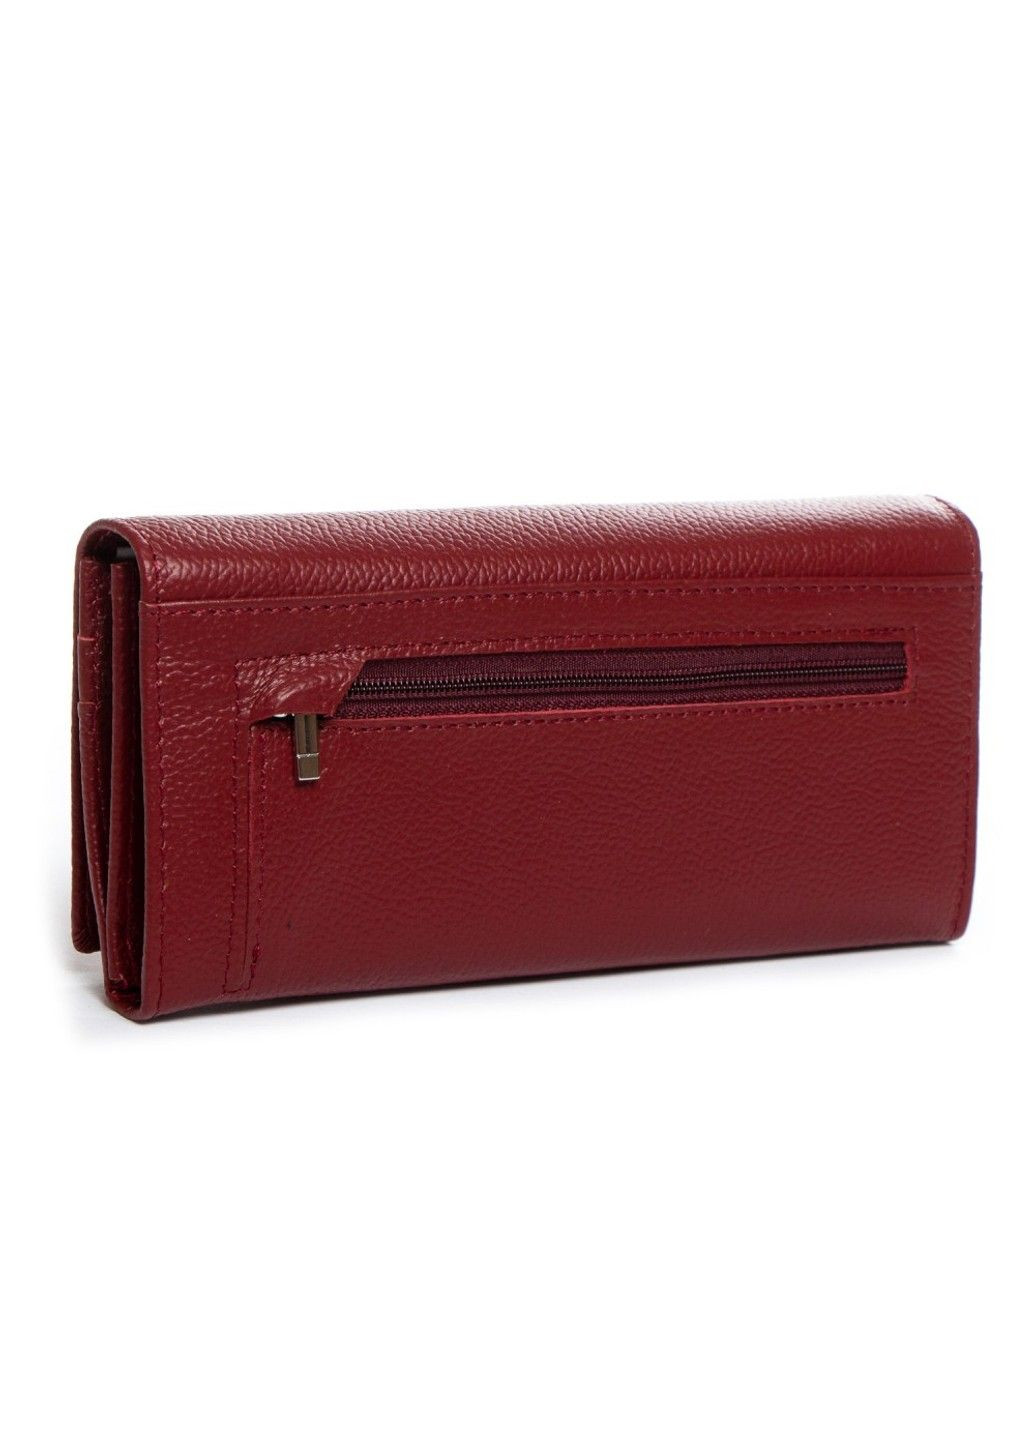 Шкіряний жіночий гаманець Classik wine-red Dr. Bond (282557188)